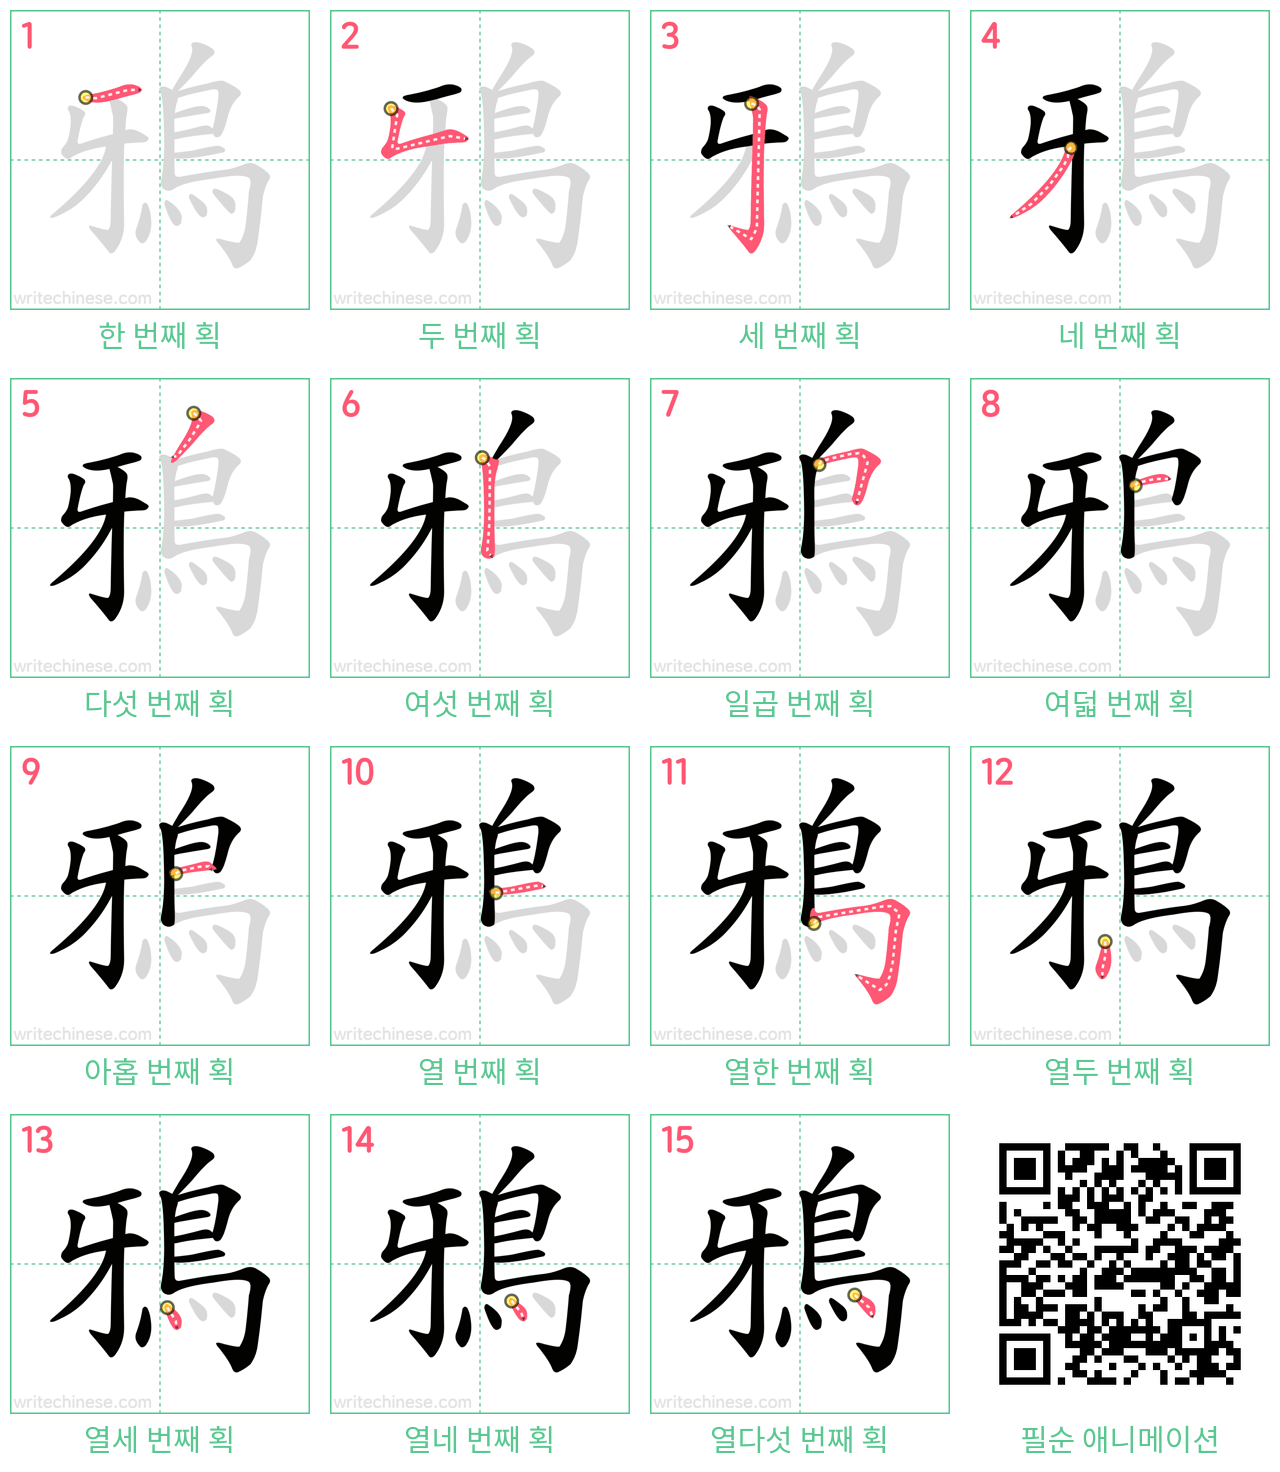 鴉 step-by-step stroke order diagrams